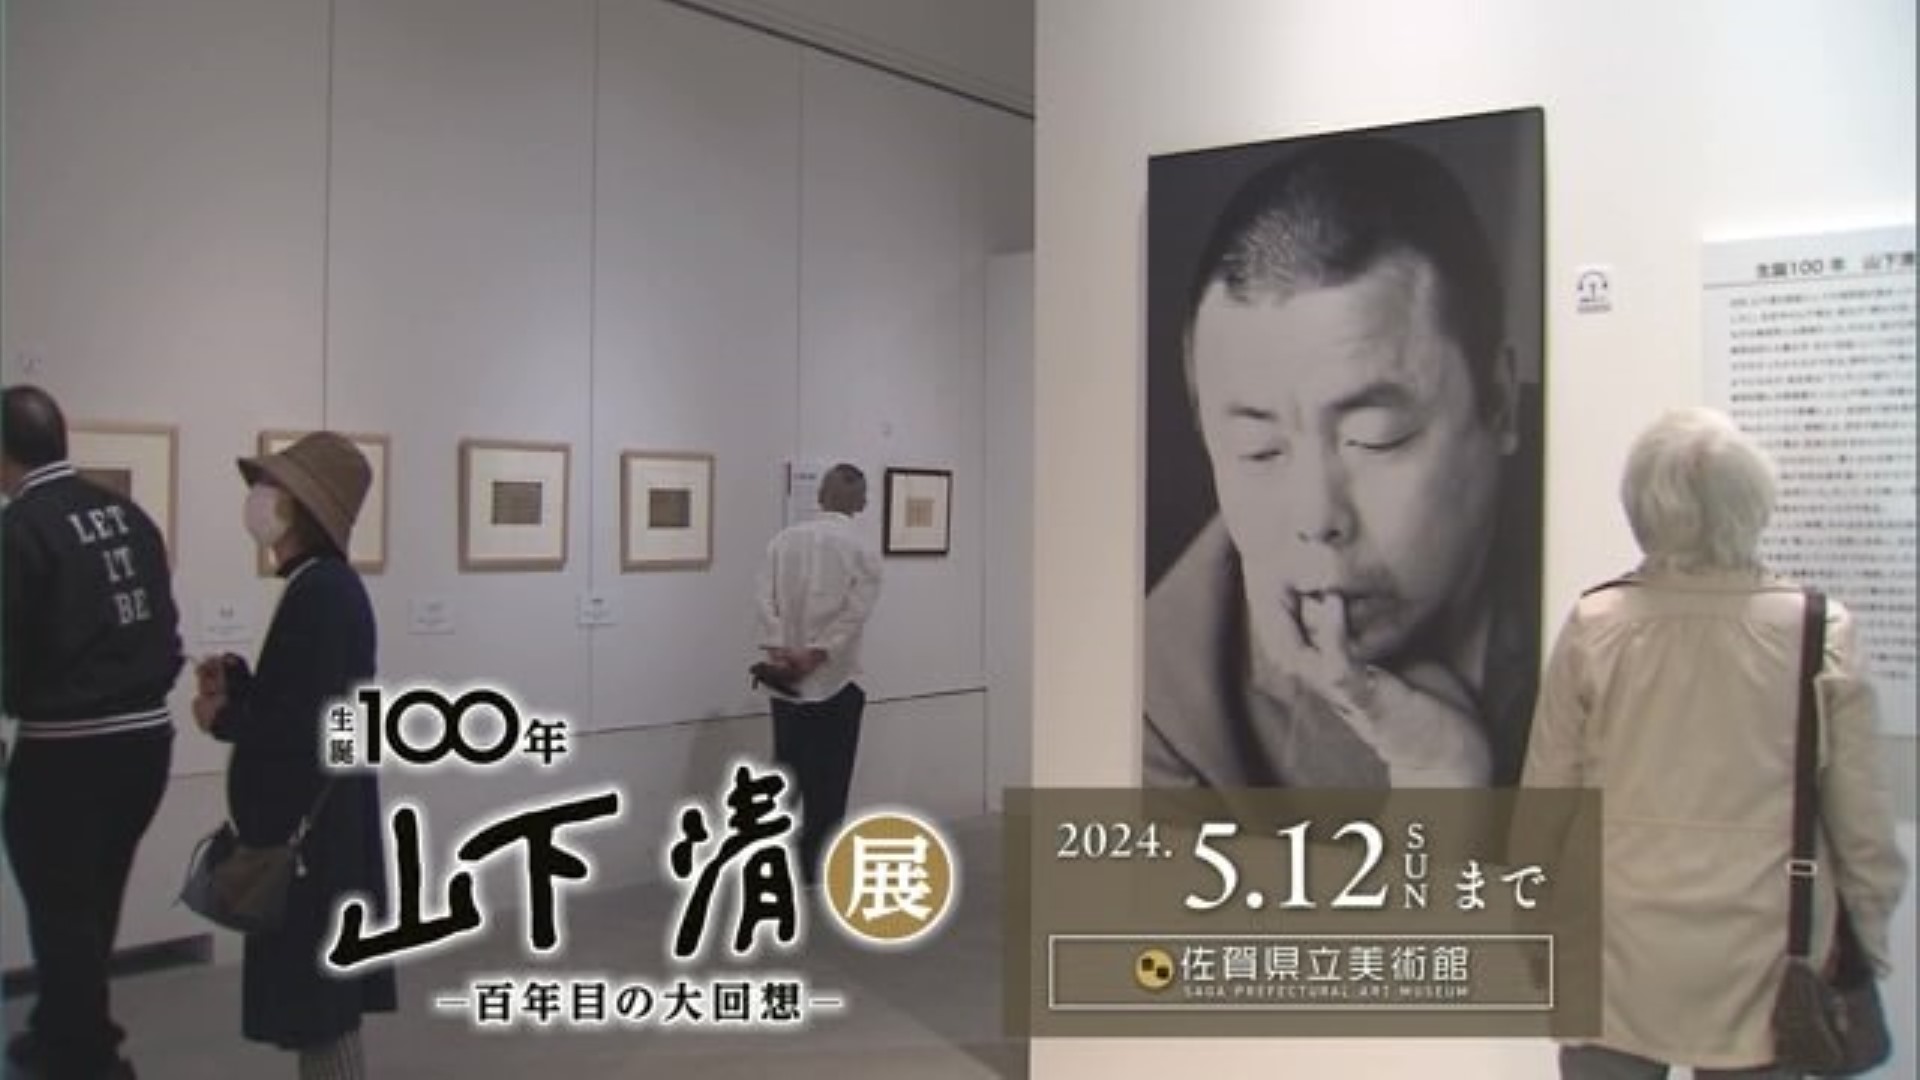 "記憶"で絵を描く天才画家 山下清さん 生誕100年の記念美術展「生誕100年 山下清展 -百年目の大回想-」